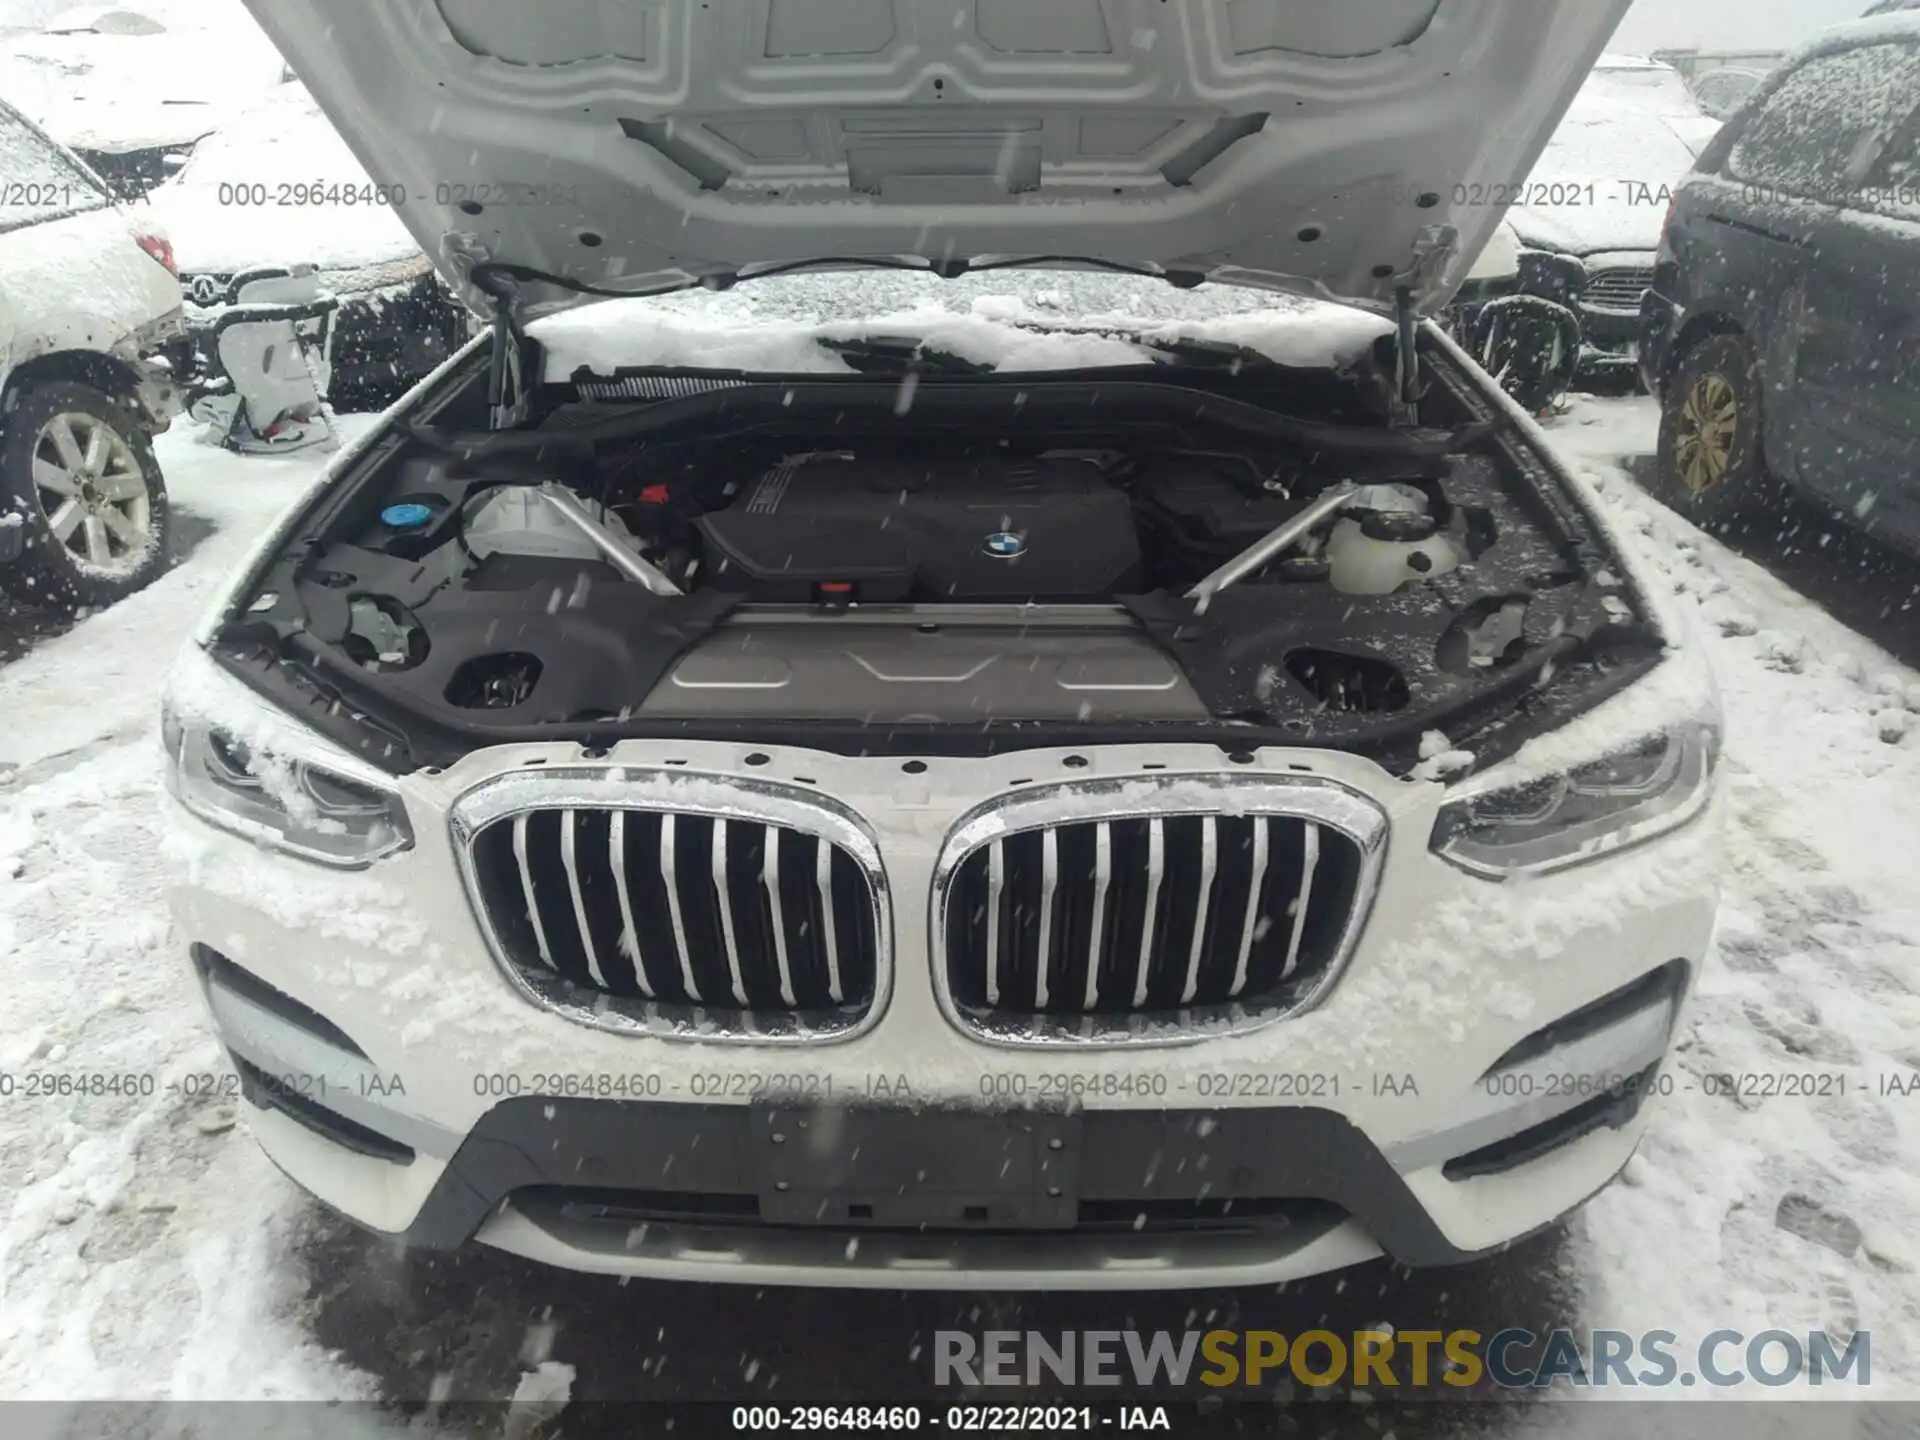 10 Photograph of a damaged car 5UXTY5C00L9B76840 BMW X3 2020